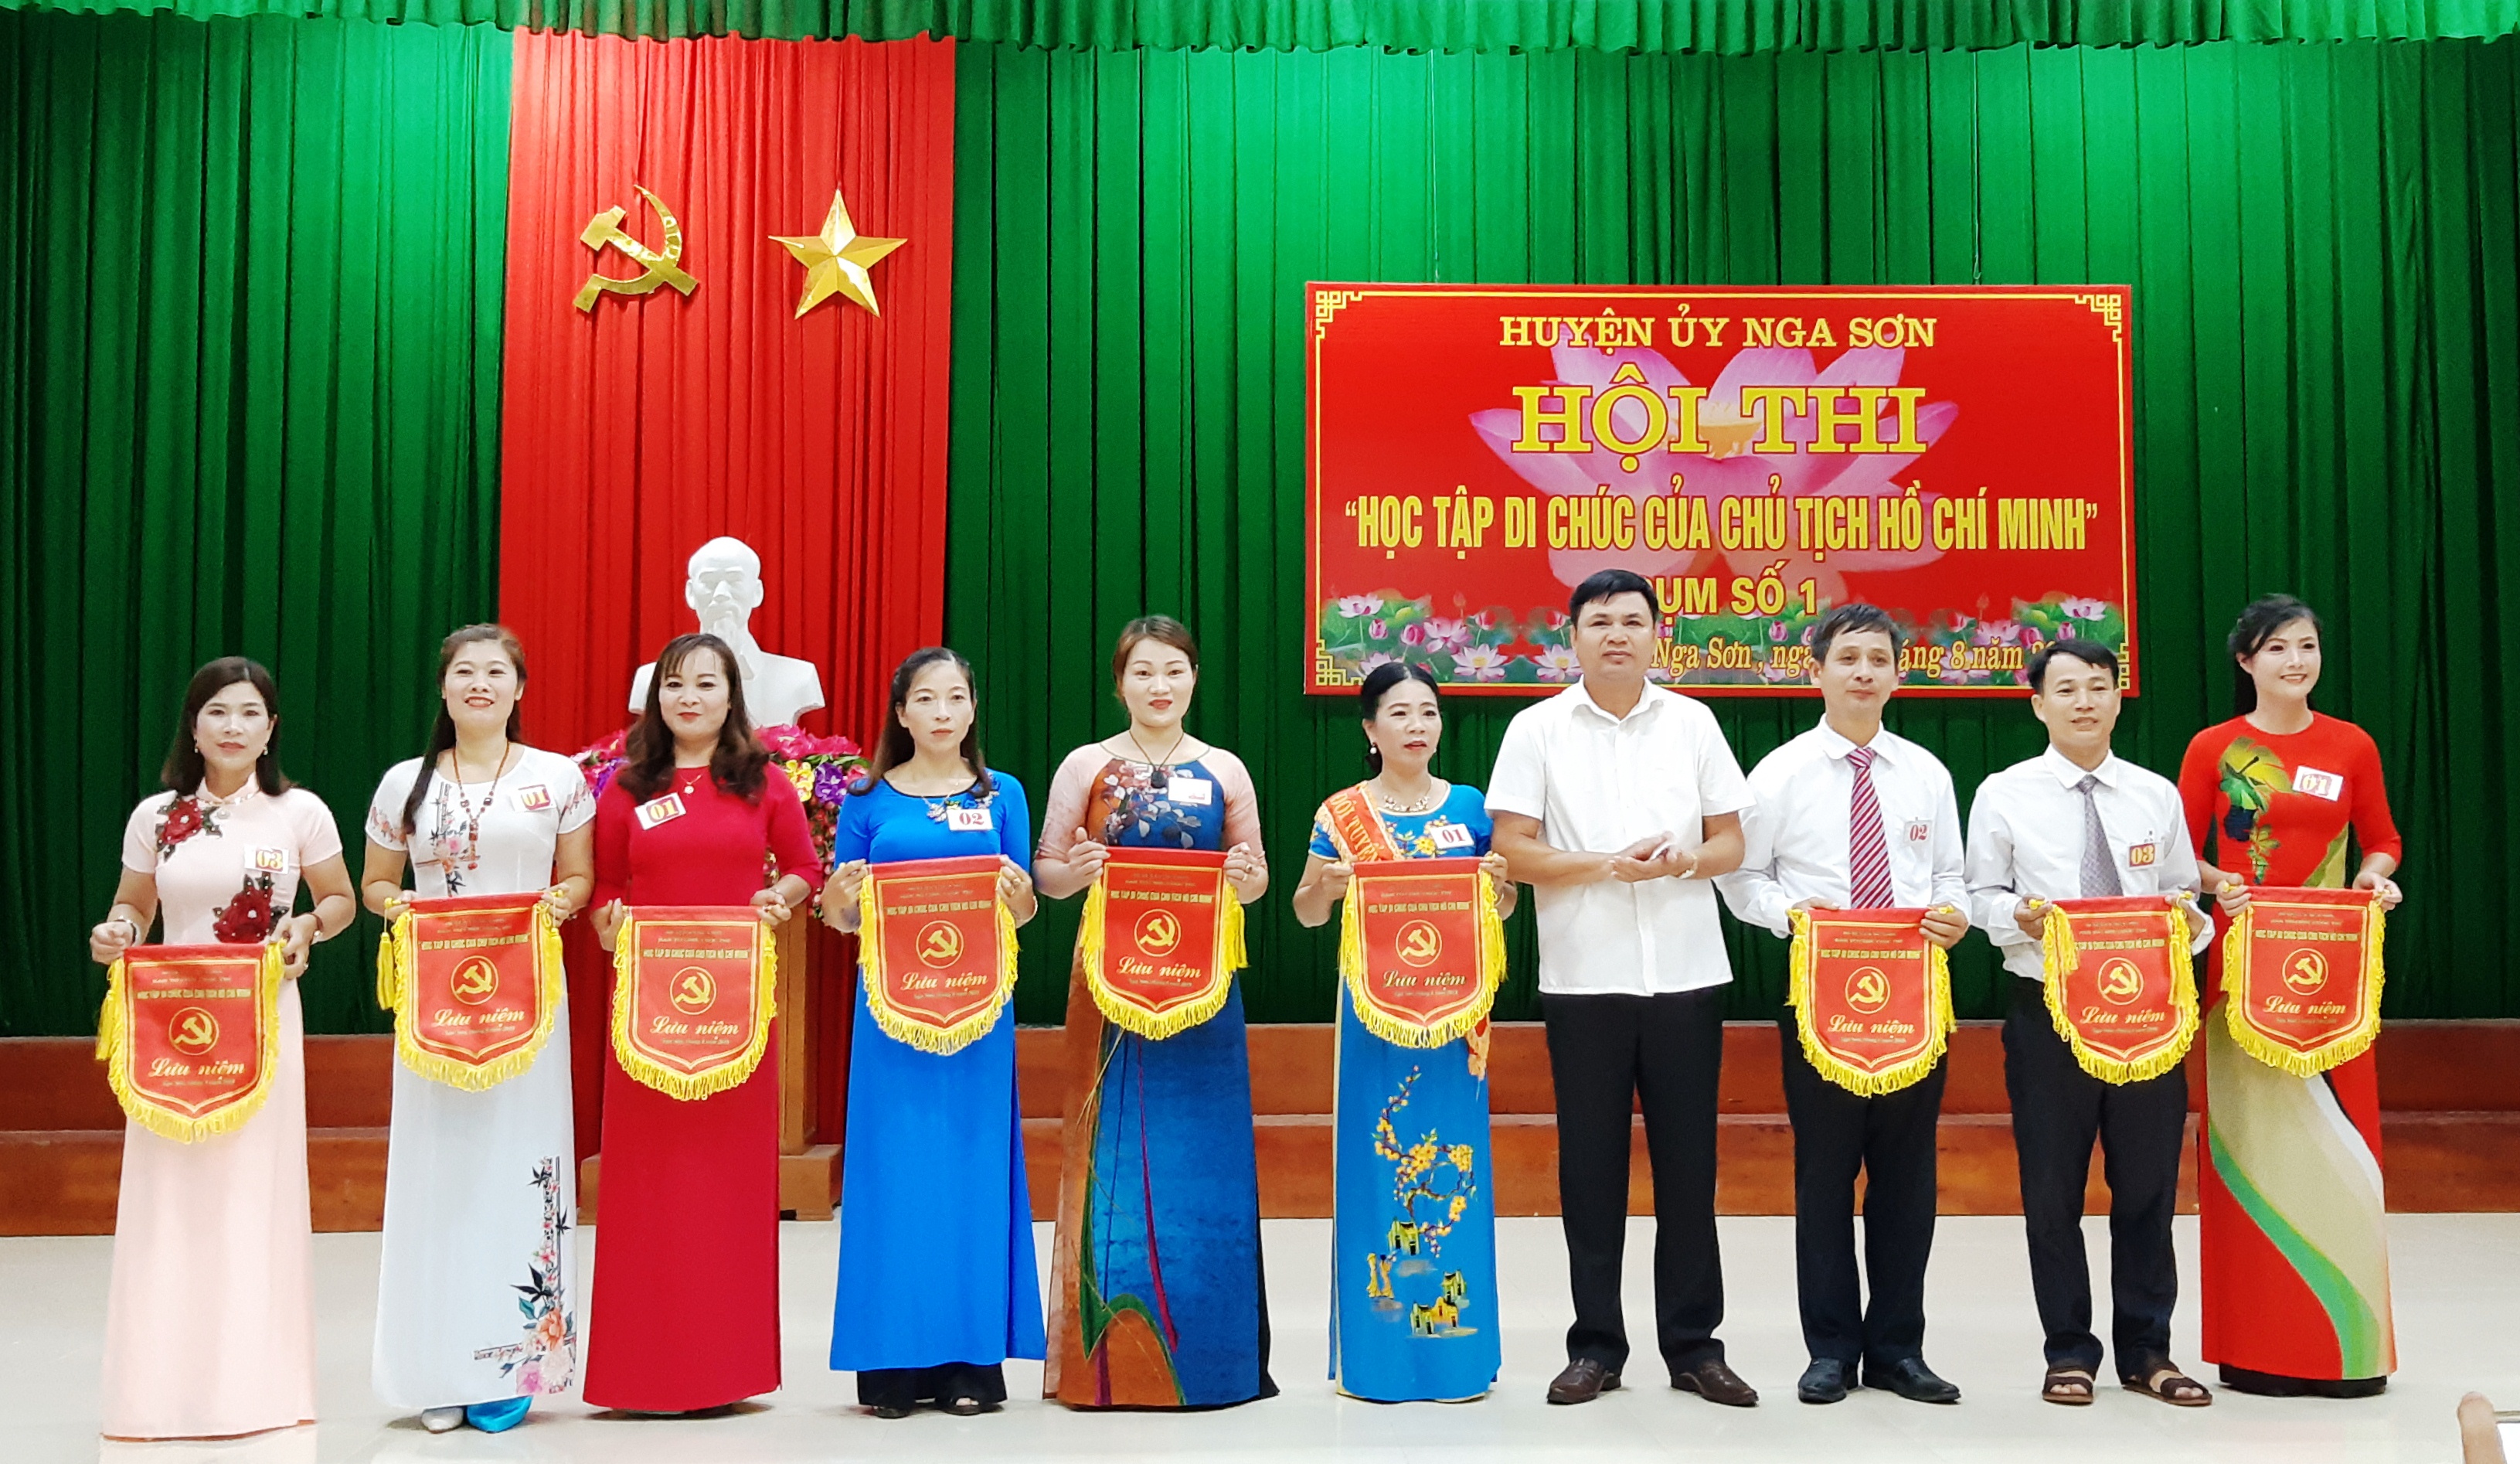 Huyện Nga Sơn tổ chức Hội thi “ Học tập di chúc của Chủ tịch Hồ Chí Minh”